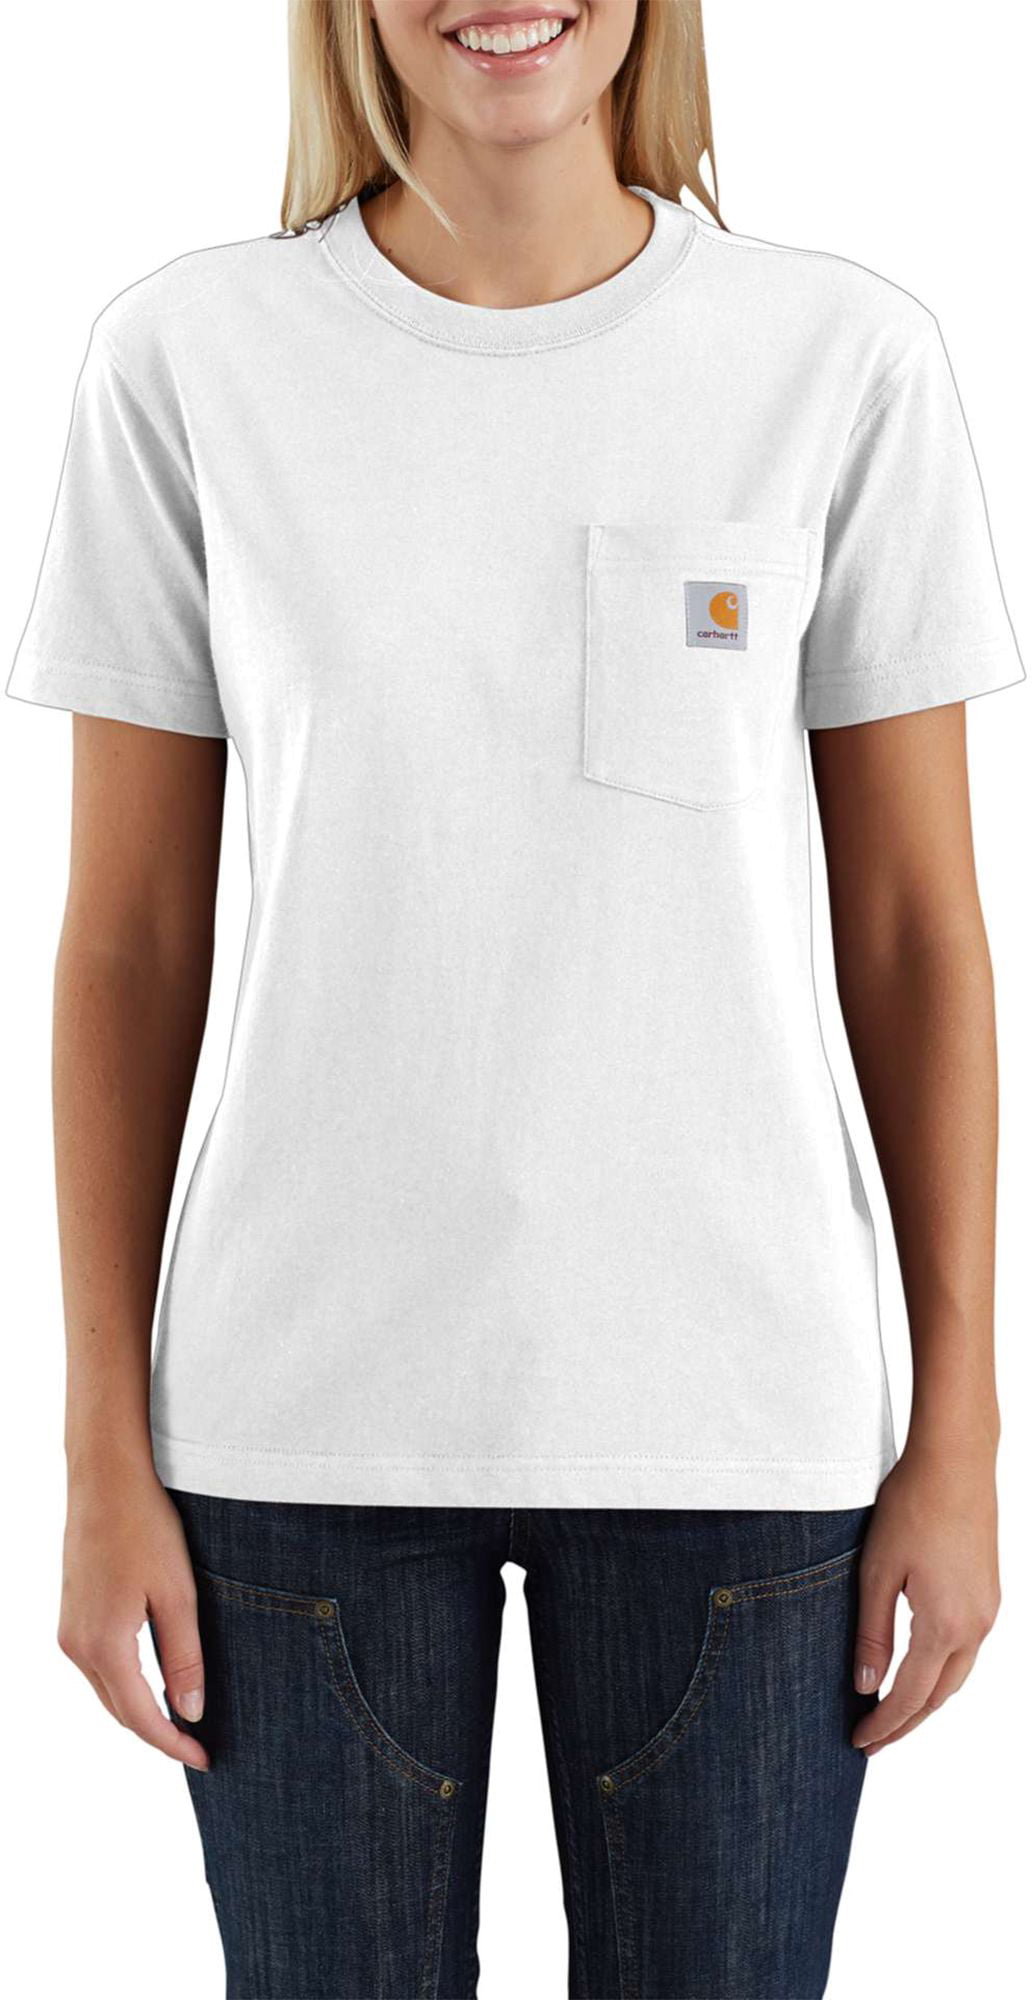 Carhartt - Carhartt Women's WK87 Workwear Pocket SS T-Shirt - Walmart ...